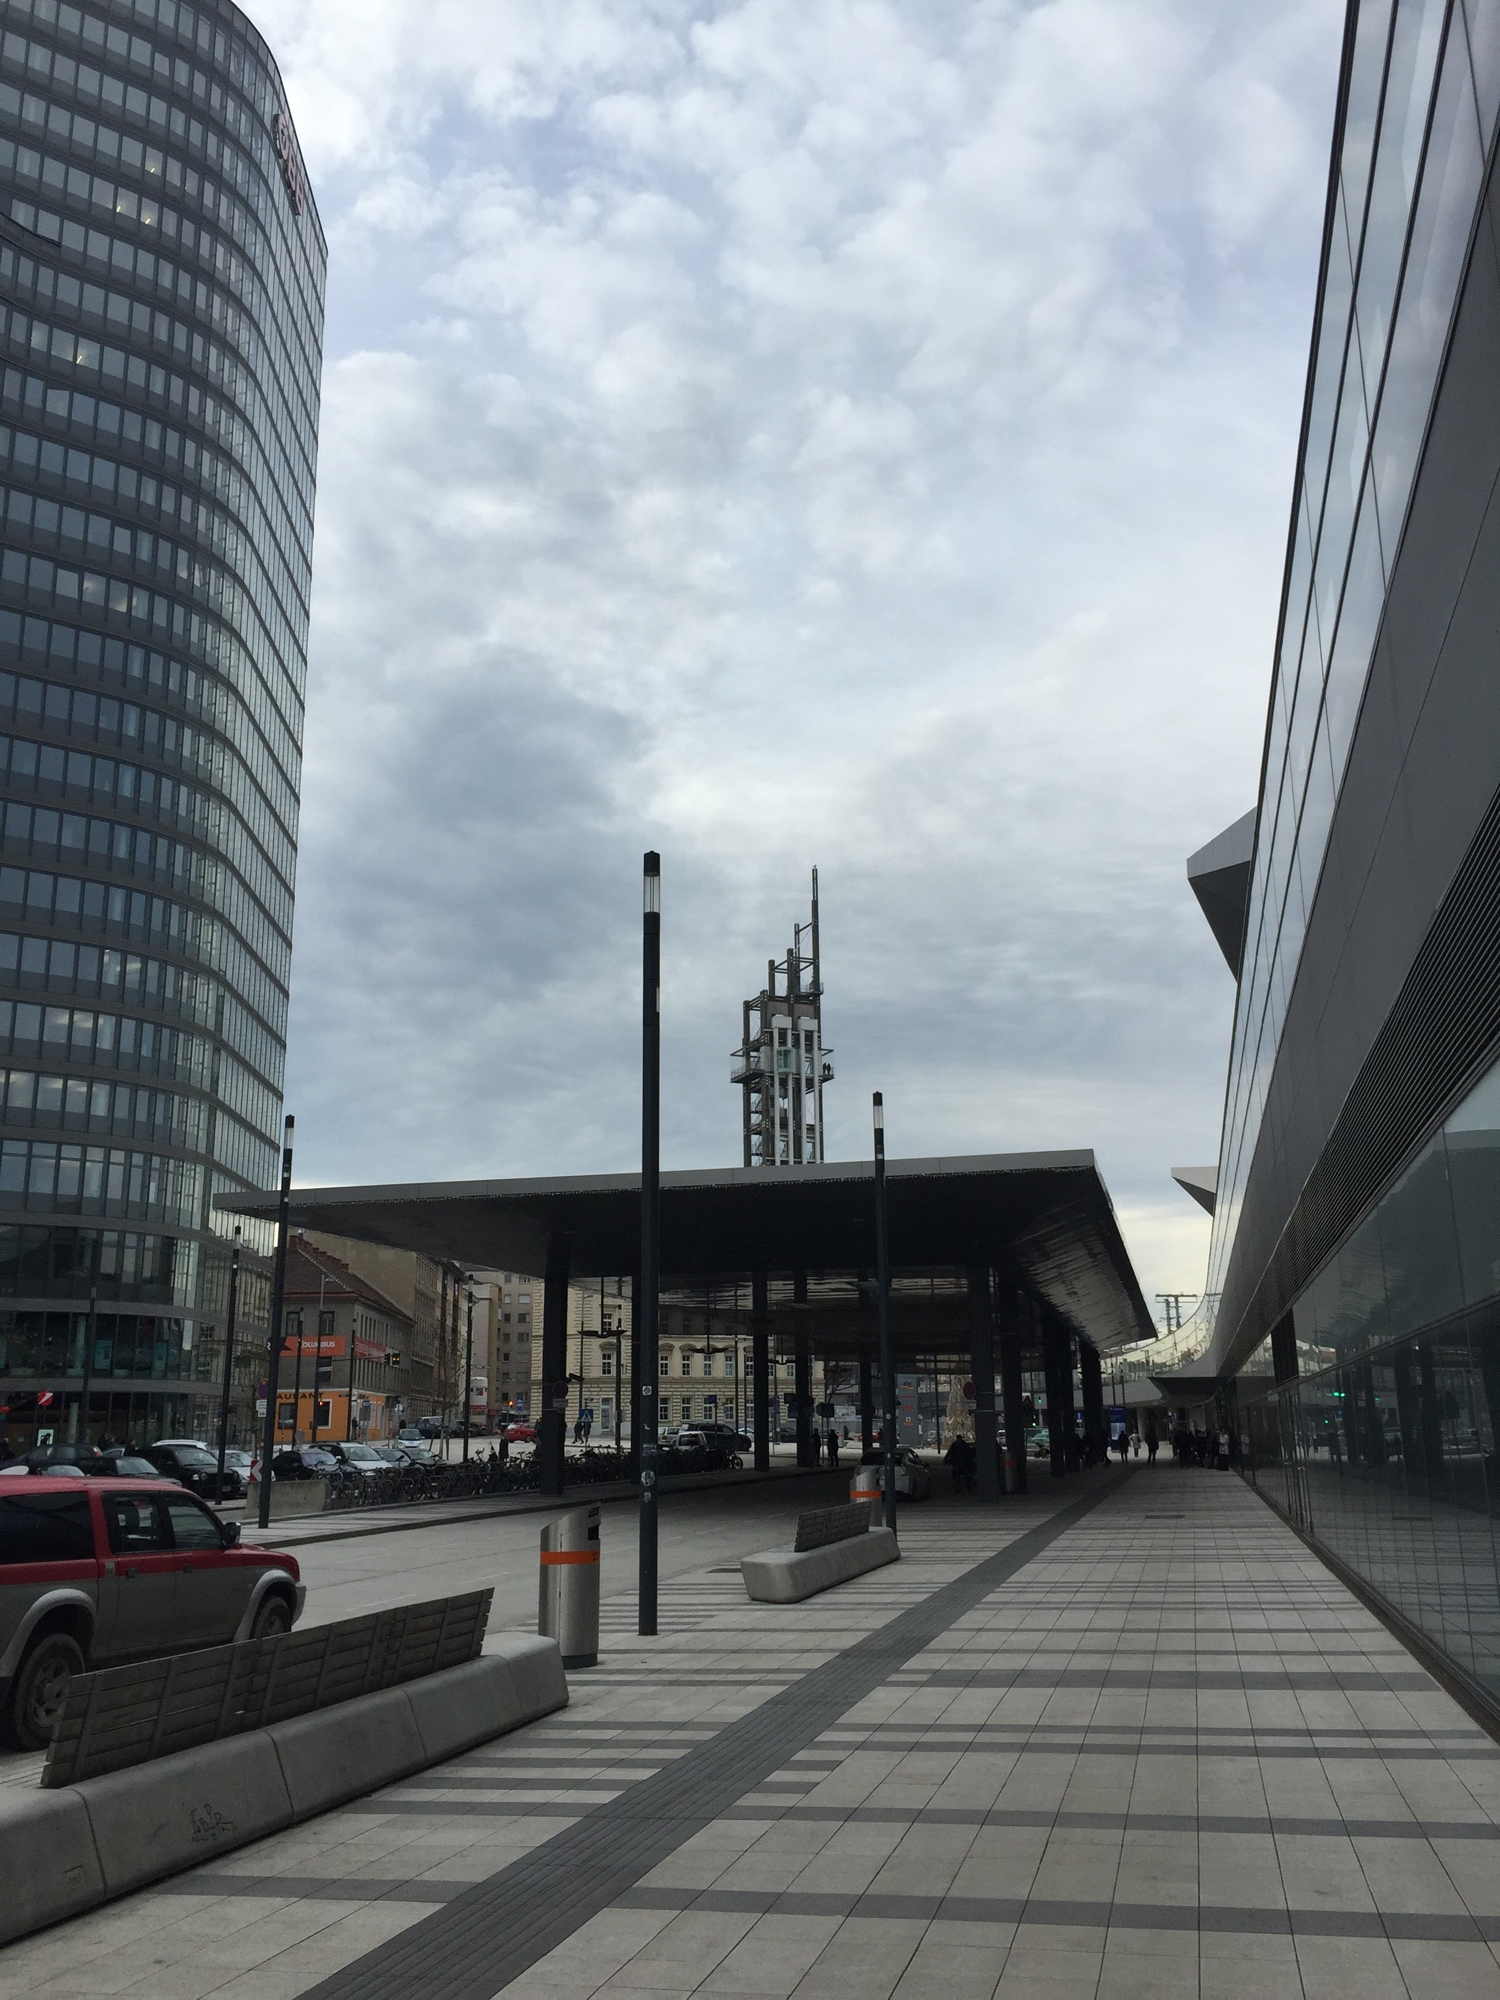 Platz vor dem Hauptbahnhof mit Blick auf den bahnorama-Turm